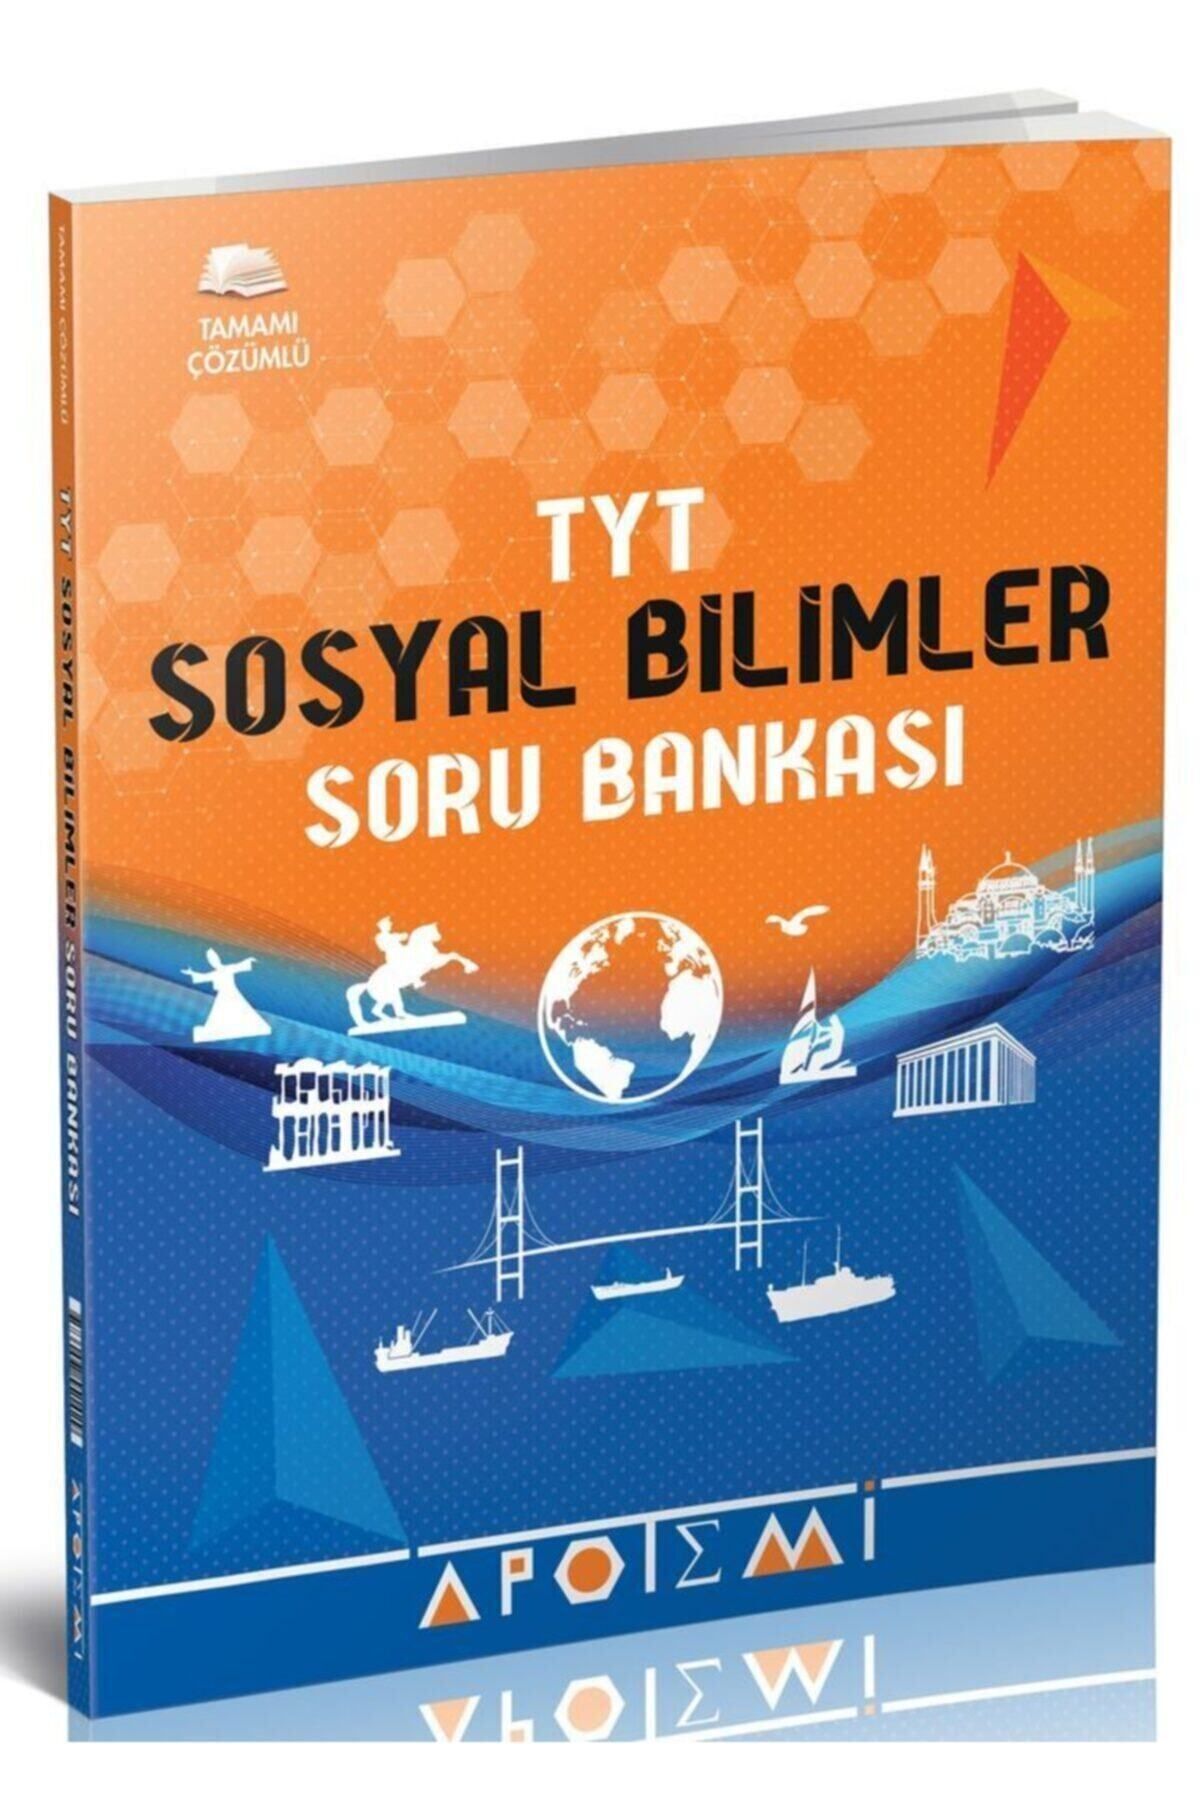 Apotemi Yayınları Apotemi Tyt Sosyal Bilimler Soru Bankası